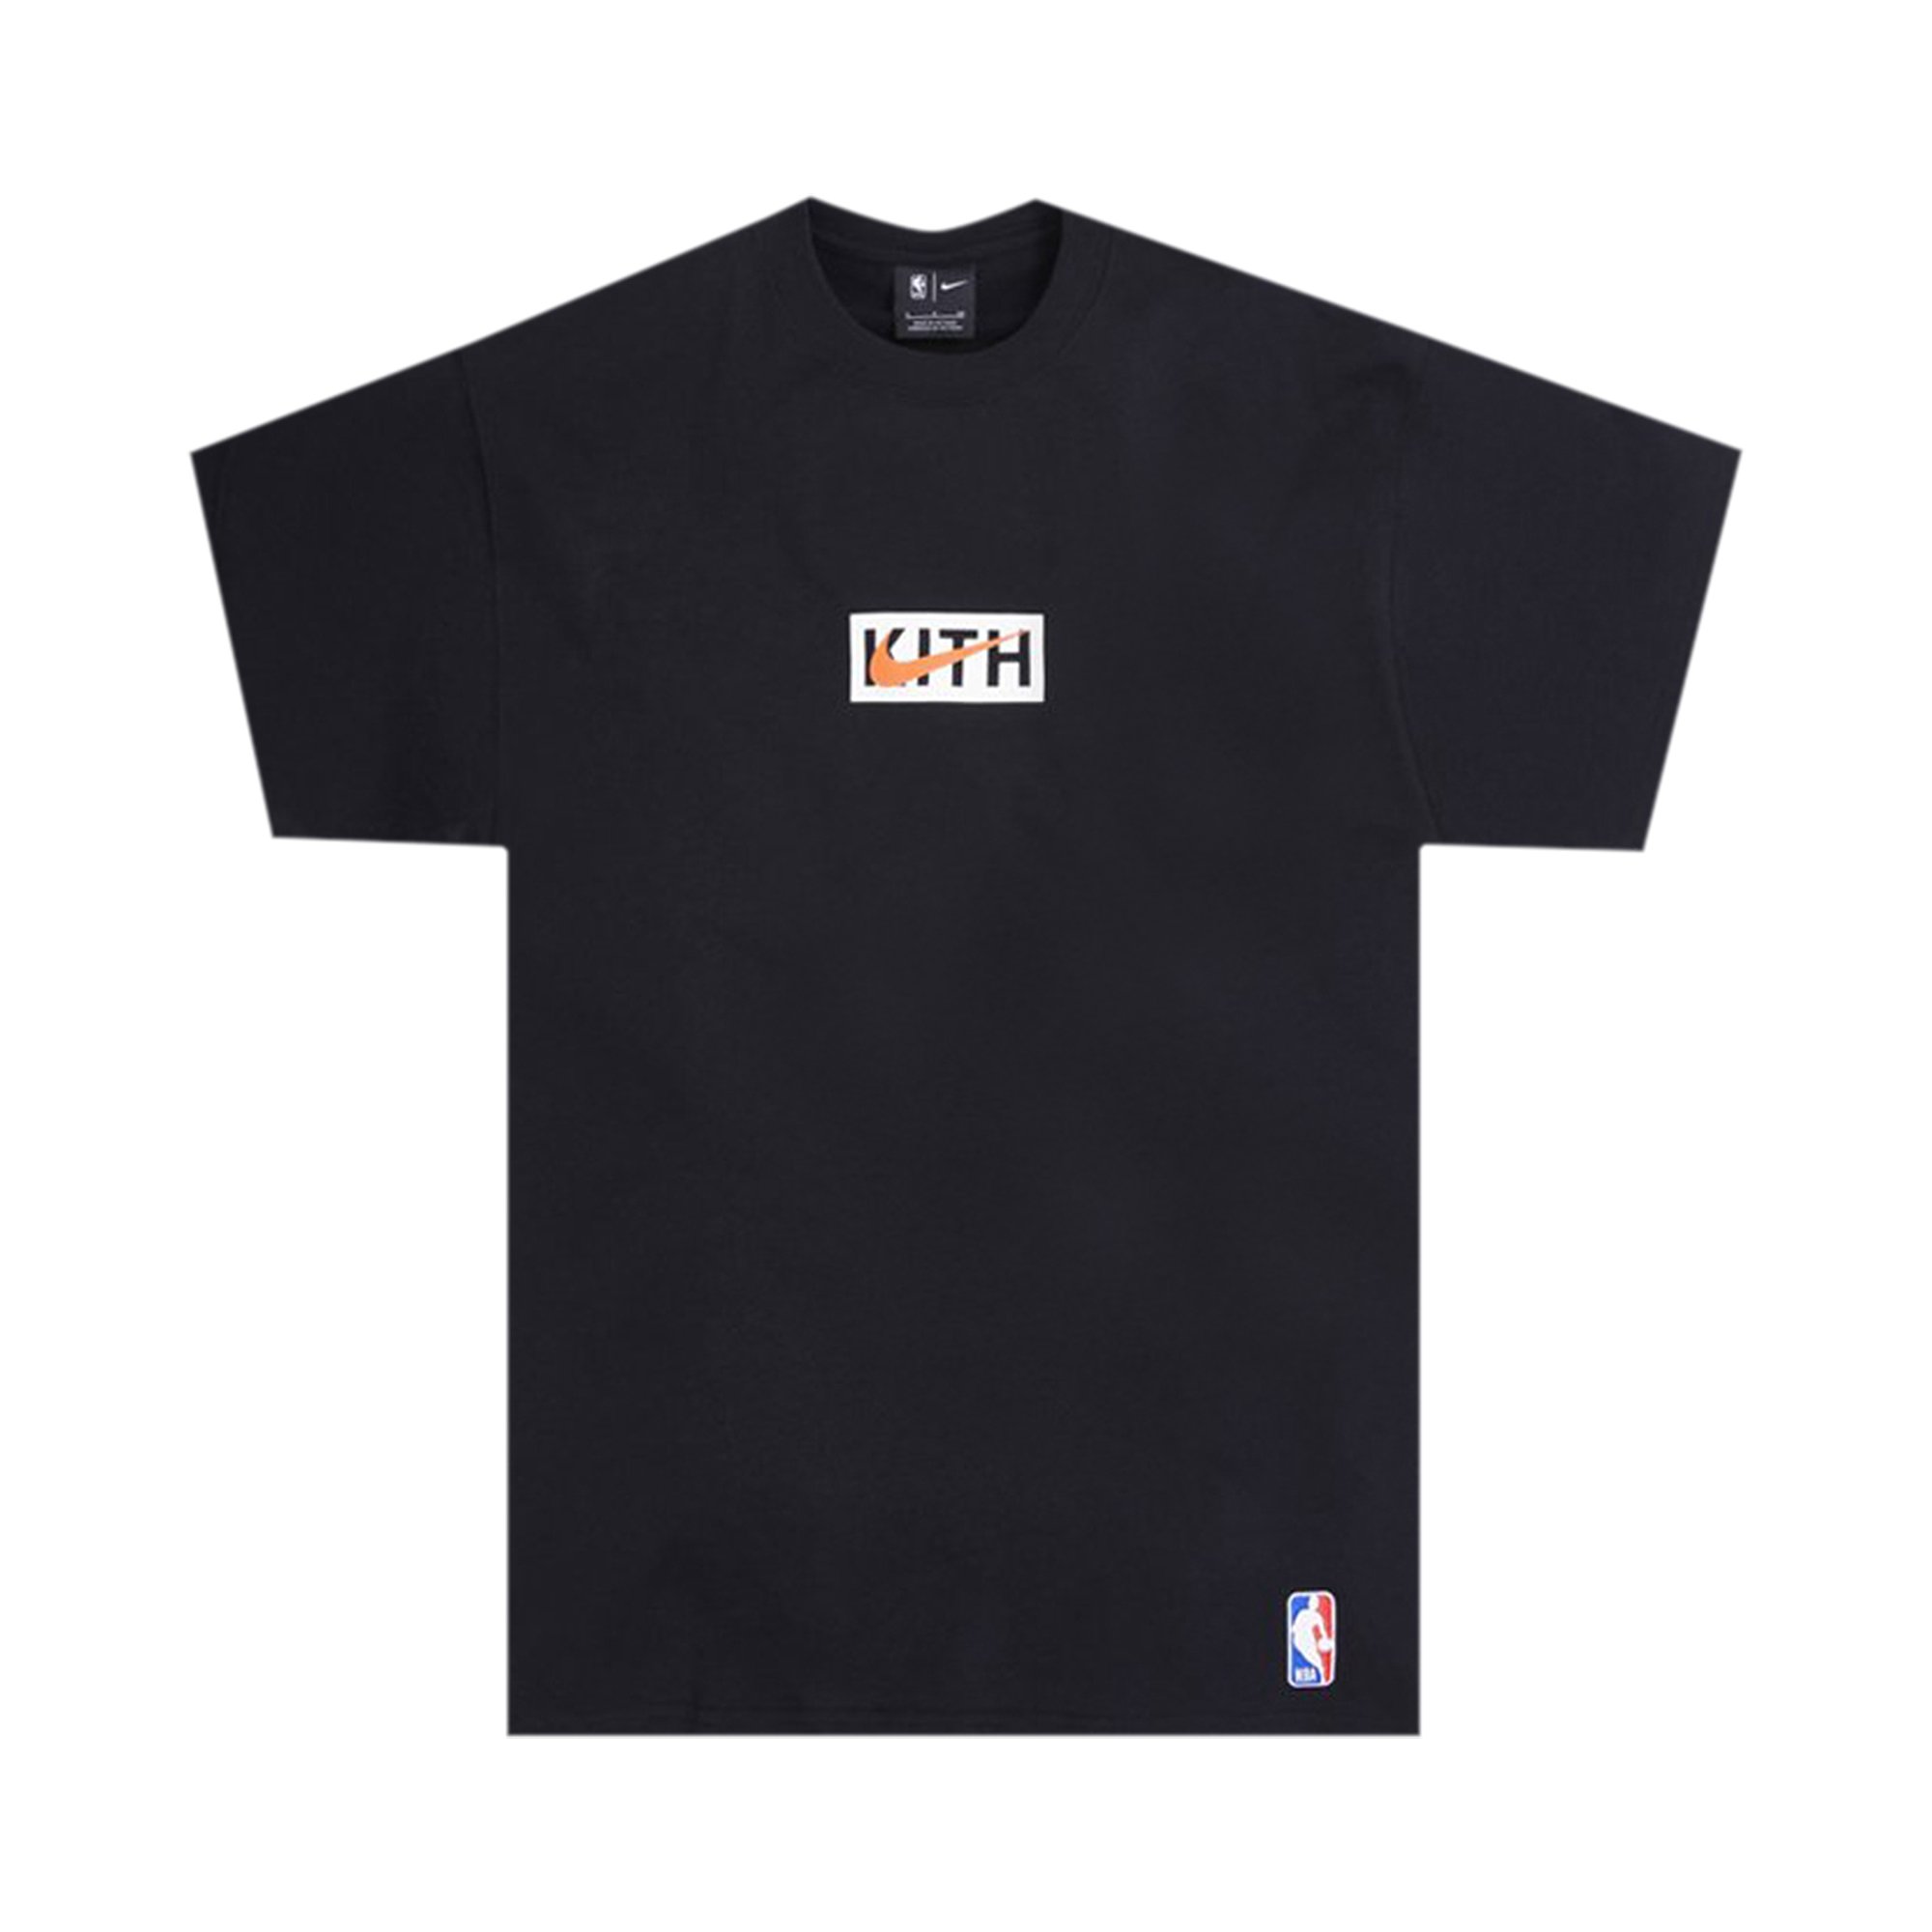 Buy Kith x Nike for New York Knicks Tee 'Black' - DA1630 010 | GOAT